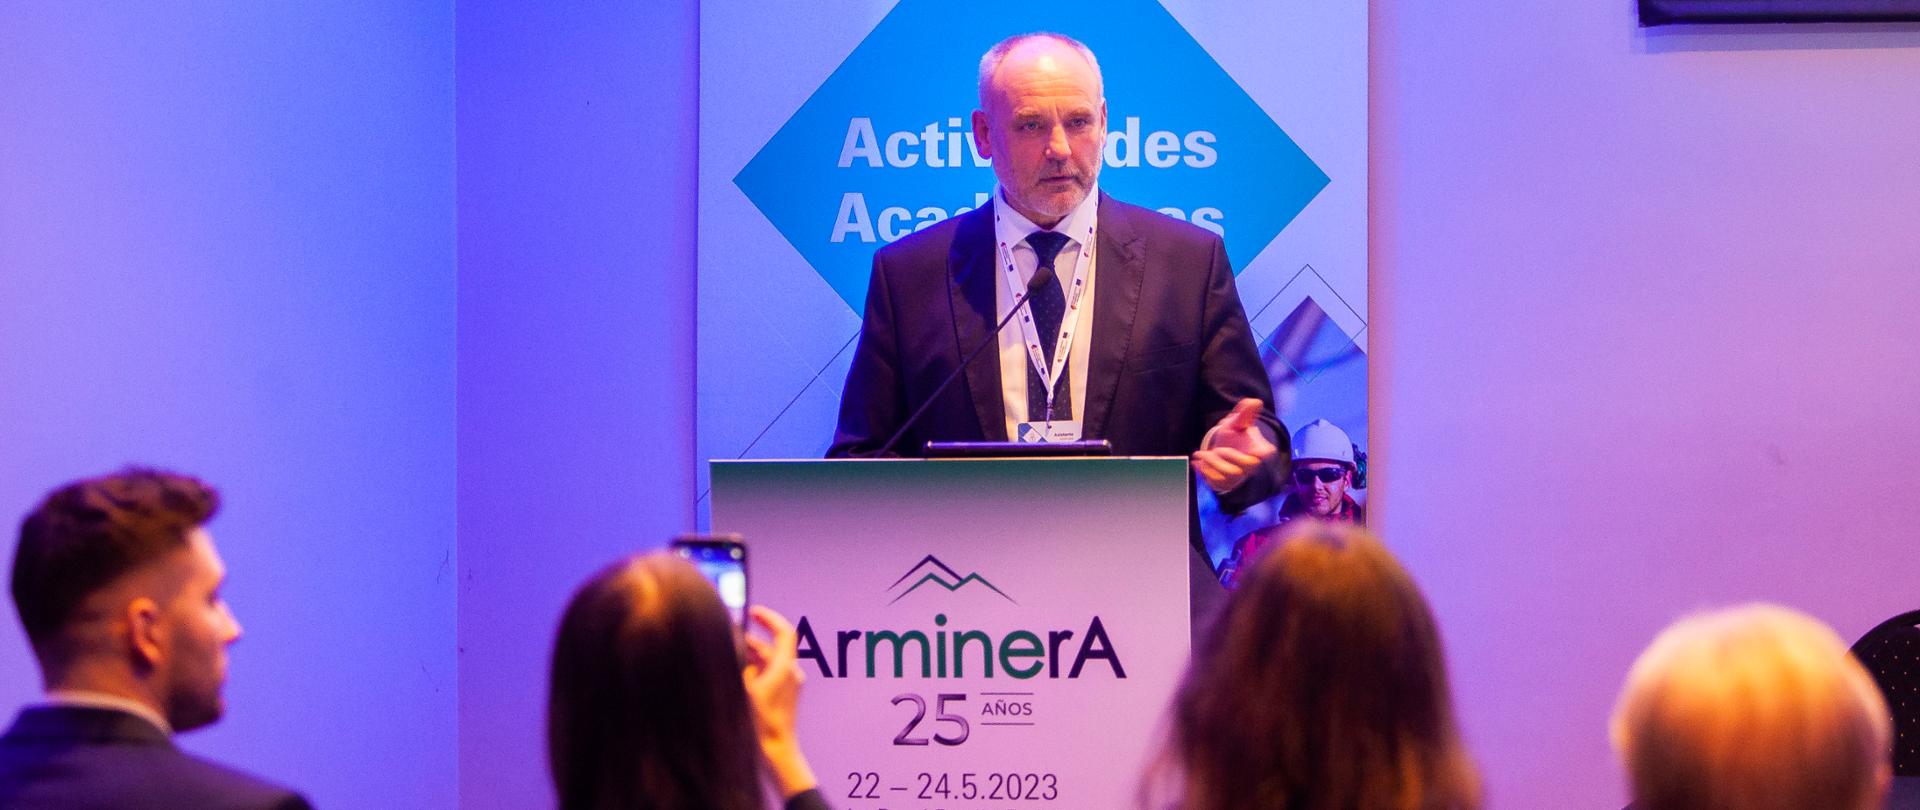 Wiceminister klimatu i środowiska Piotr Dziadzio uczestniczył w targach górniczych ARMINERA - Międzynarodowych Argentyńskich Targach Przemysłu Wydobywczego.